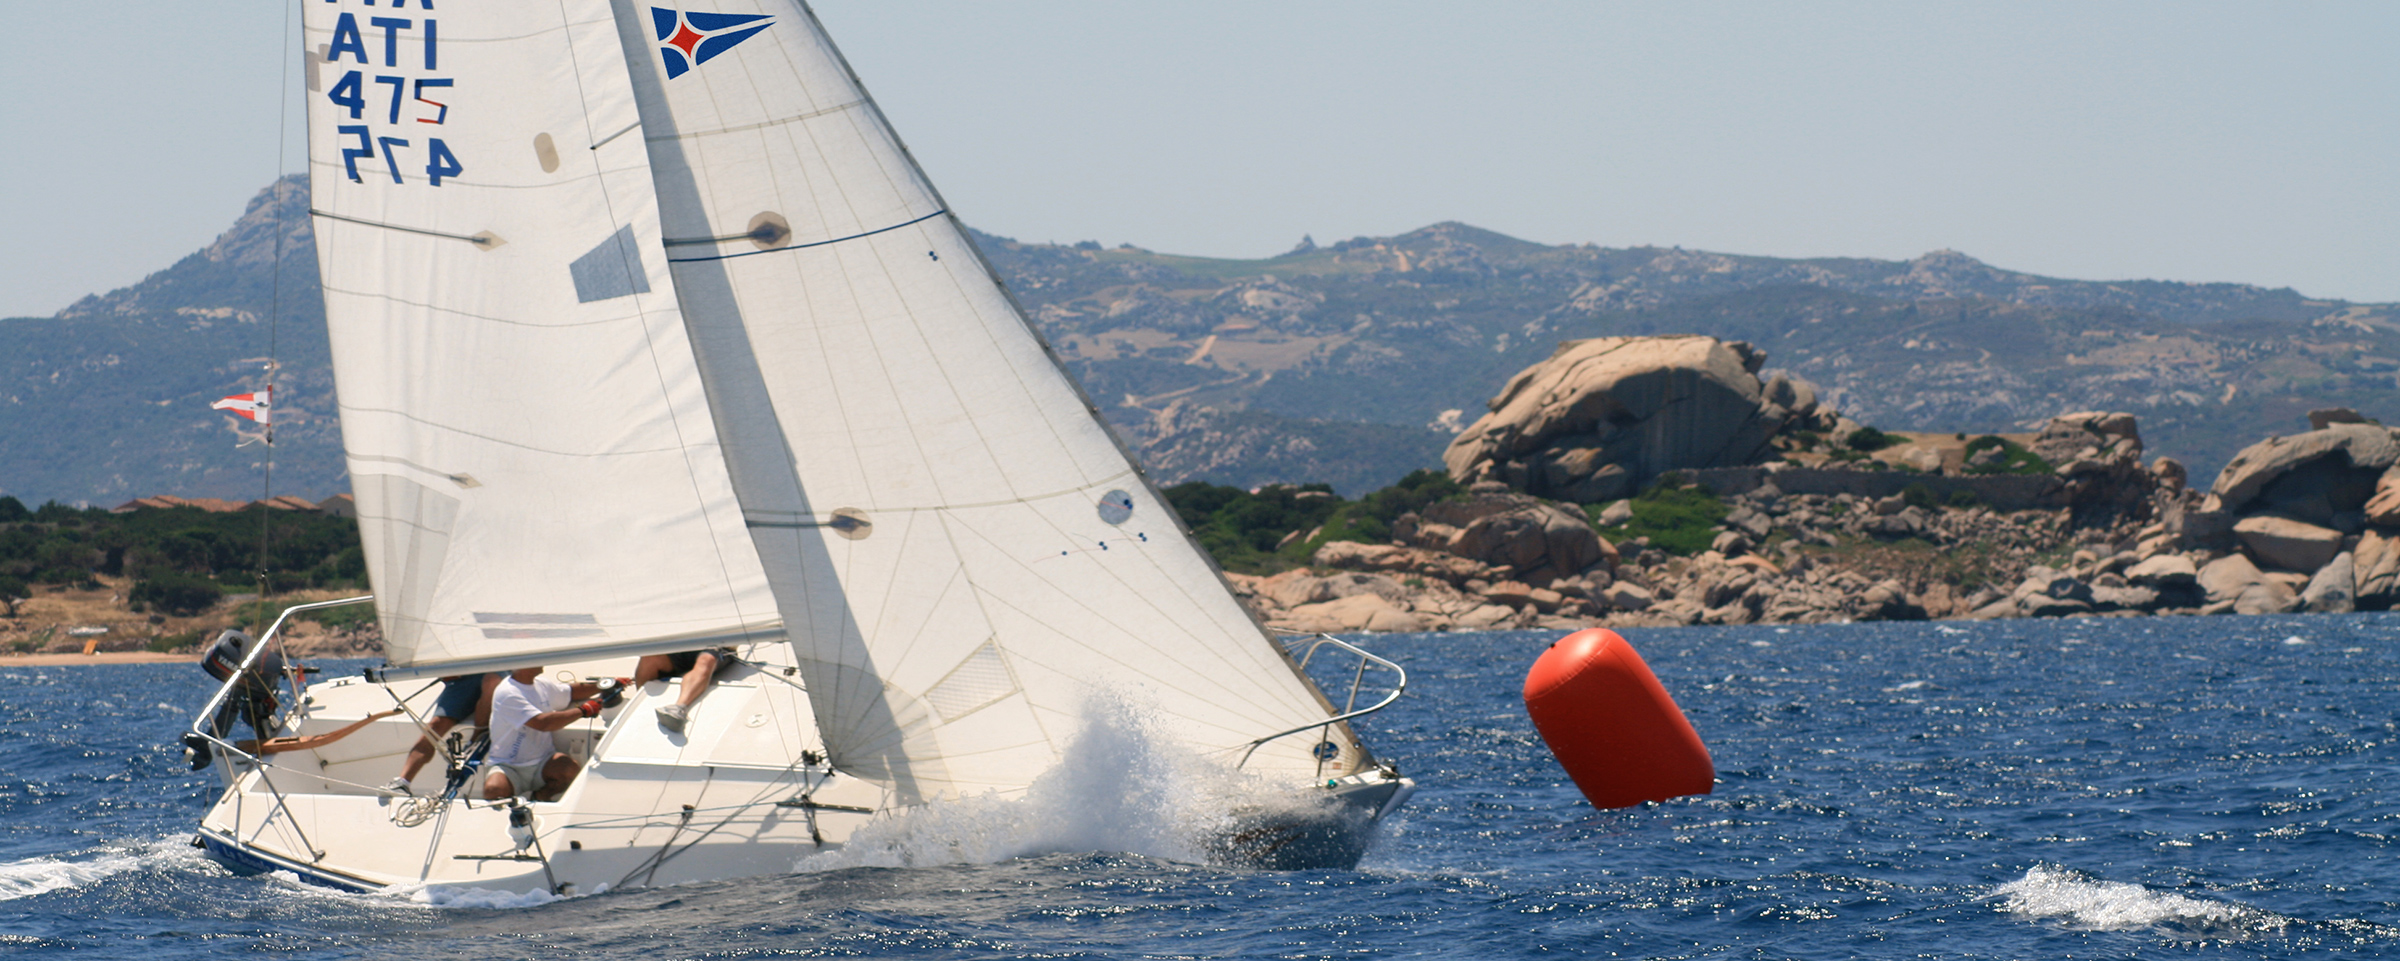 YCCS Sailing School - 3 - Yacht Club Costa Smeralda